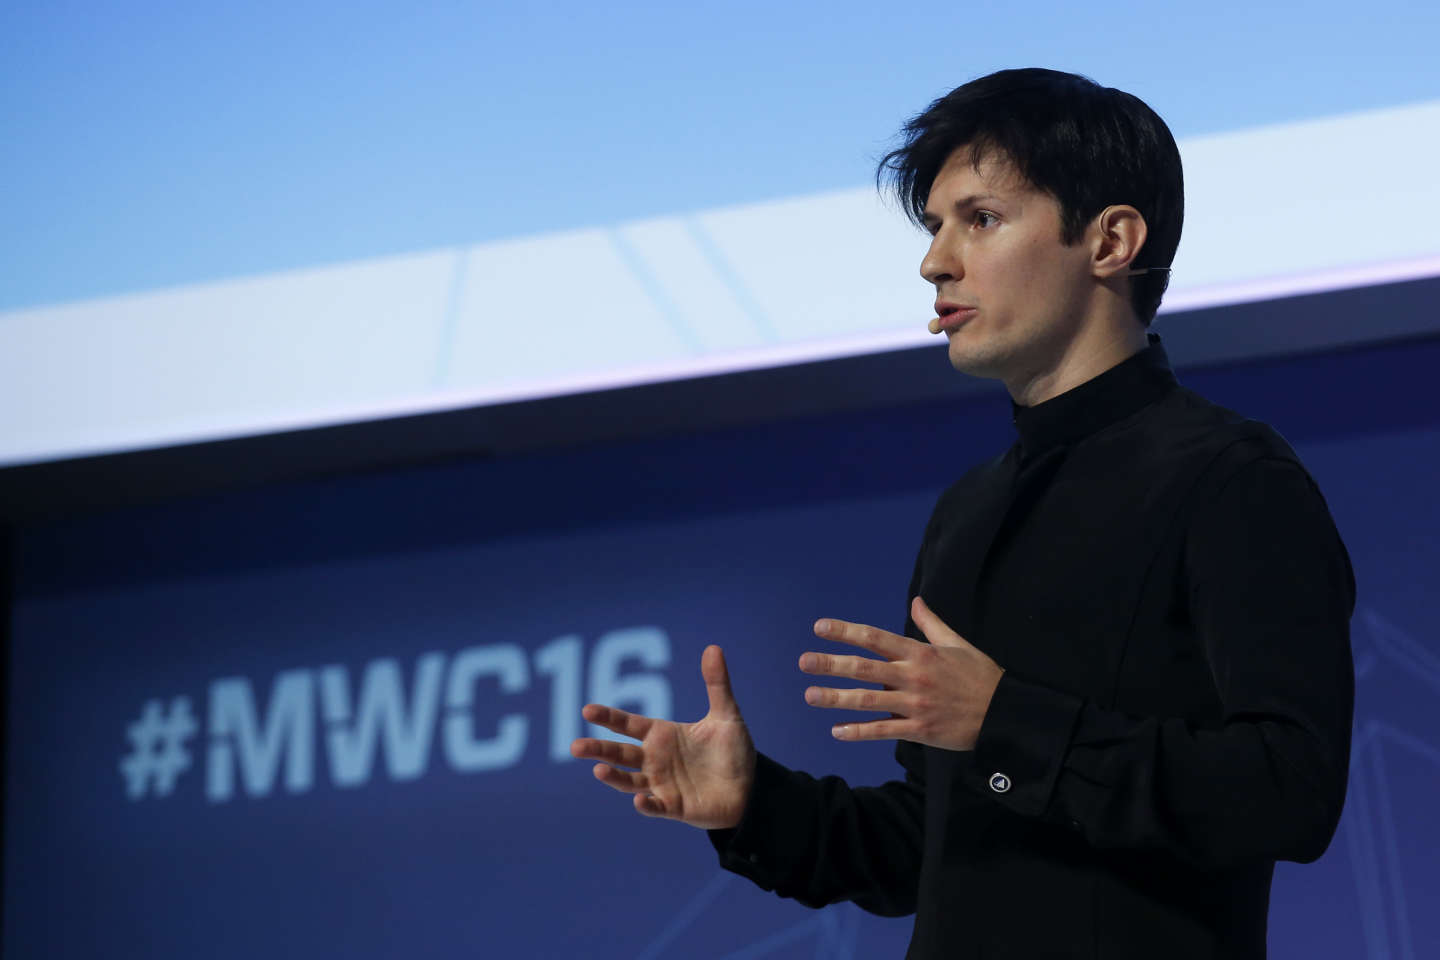 Le mystérieux passeport français de Pavel Durov, fondateur de Telegram